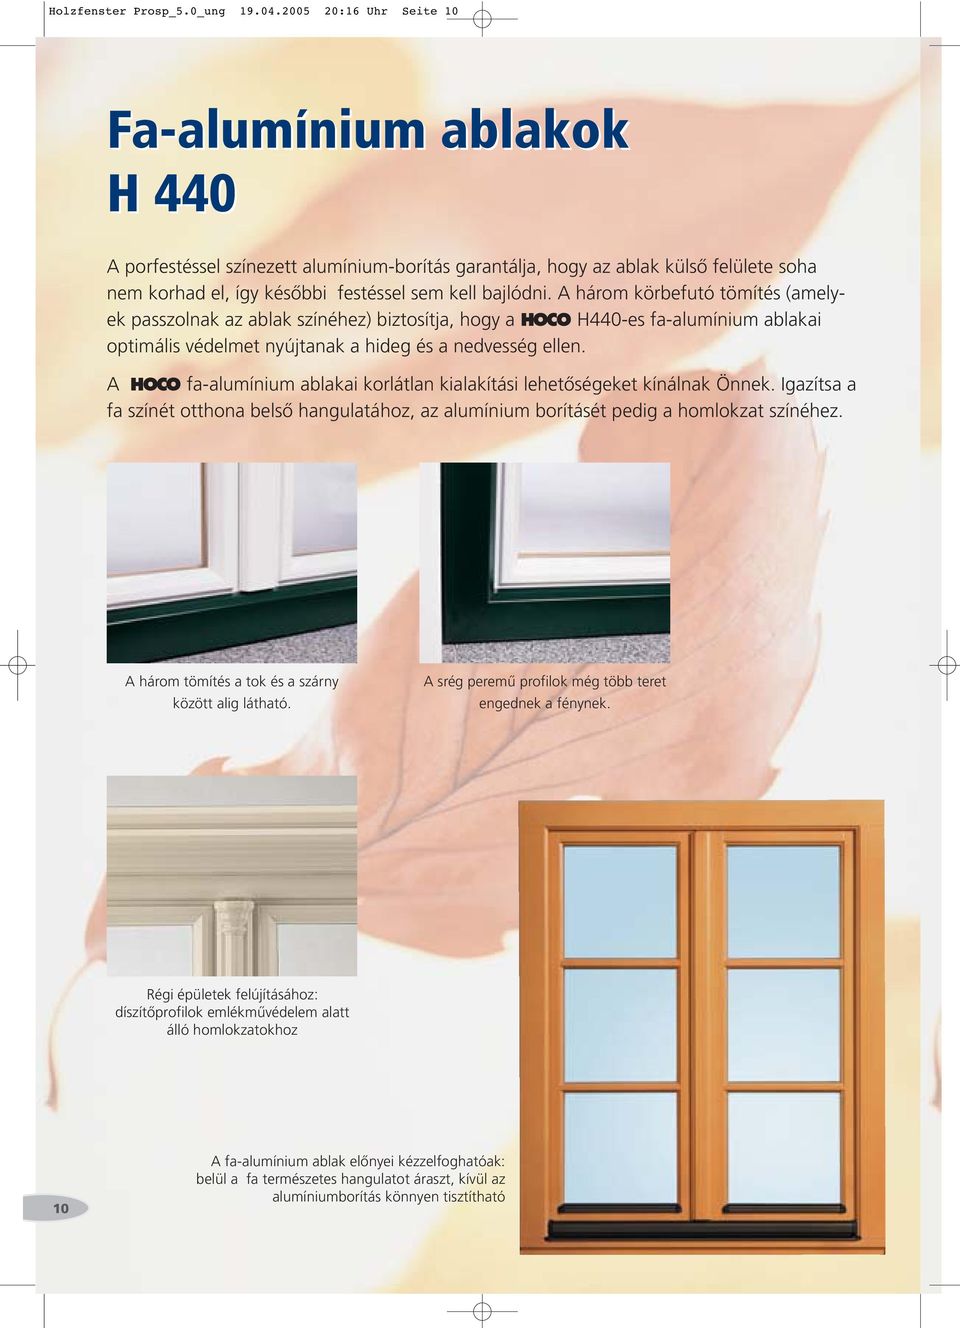 A három körbefutó tömítés (amelyek passzolnak az ablak színéhez) biztosítja, hogy a HOCO H440-es fa-alumínium ablakai optimális védelmet nyújtanak a hideg és a nedvesség ellen.